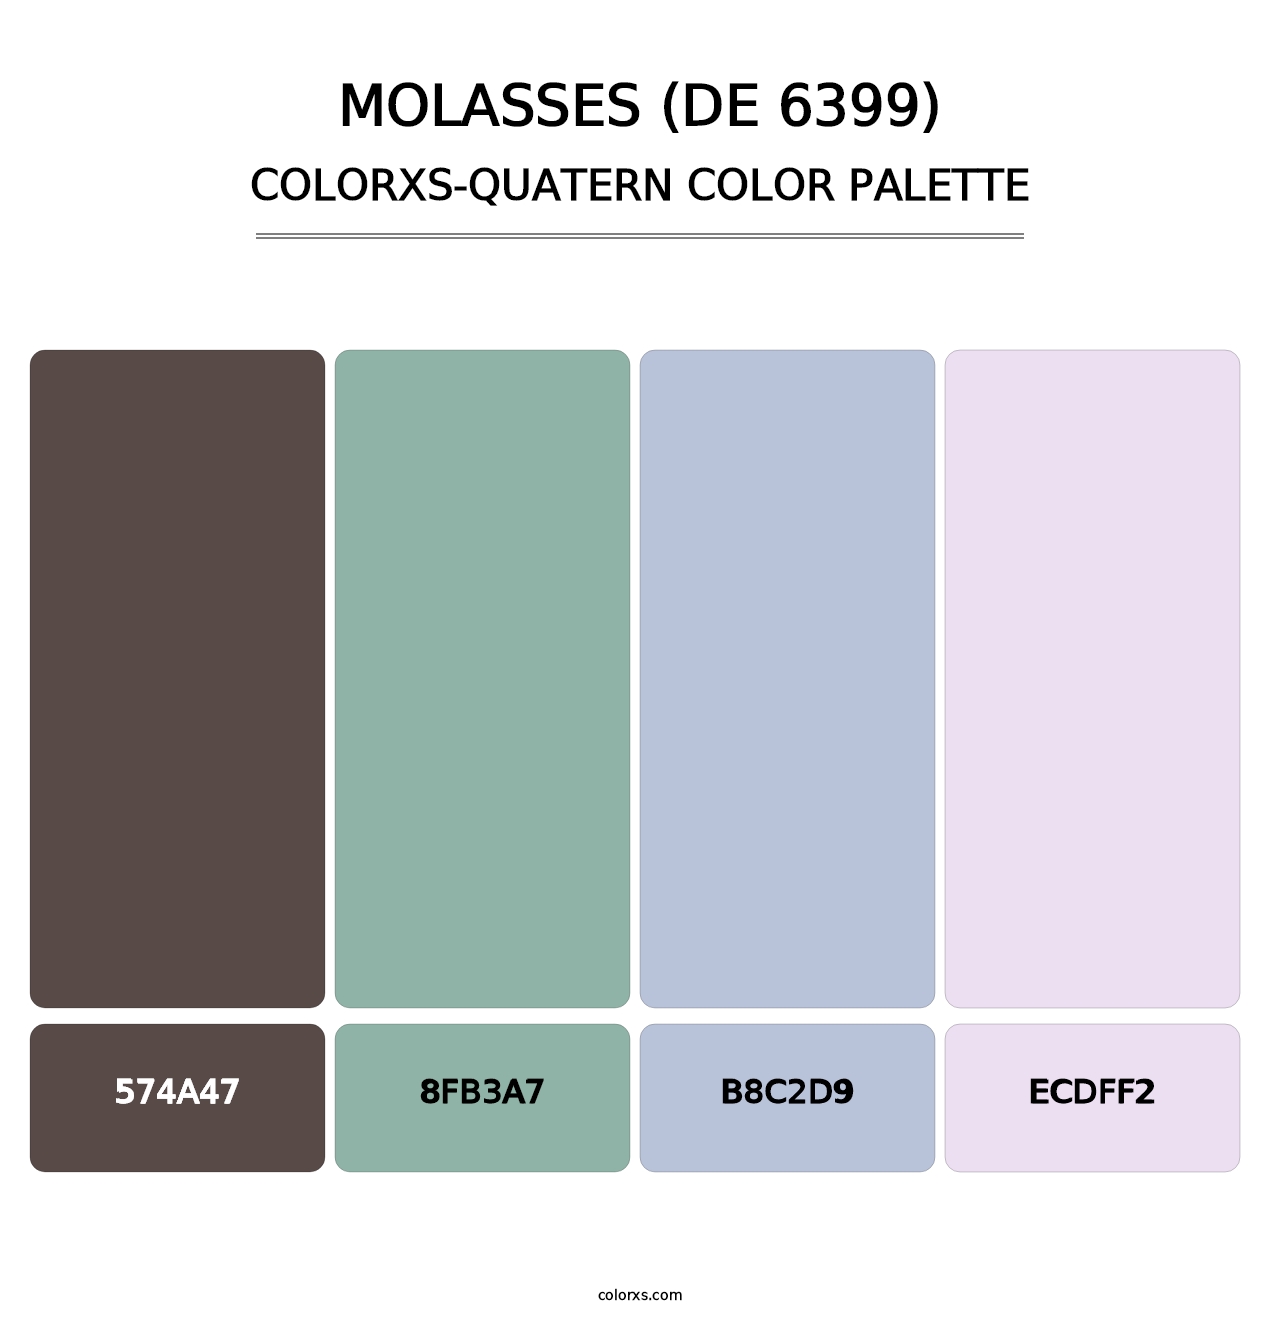 Molasses (DE 6399) - Colorxs Quatern Palette